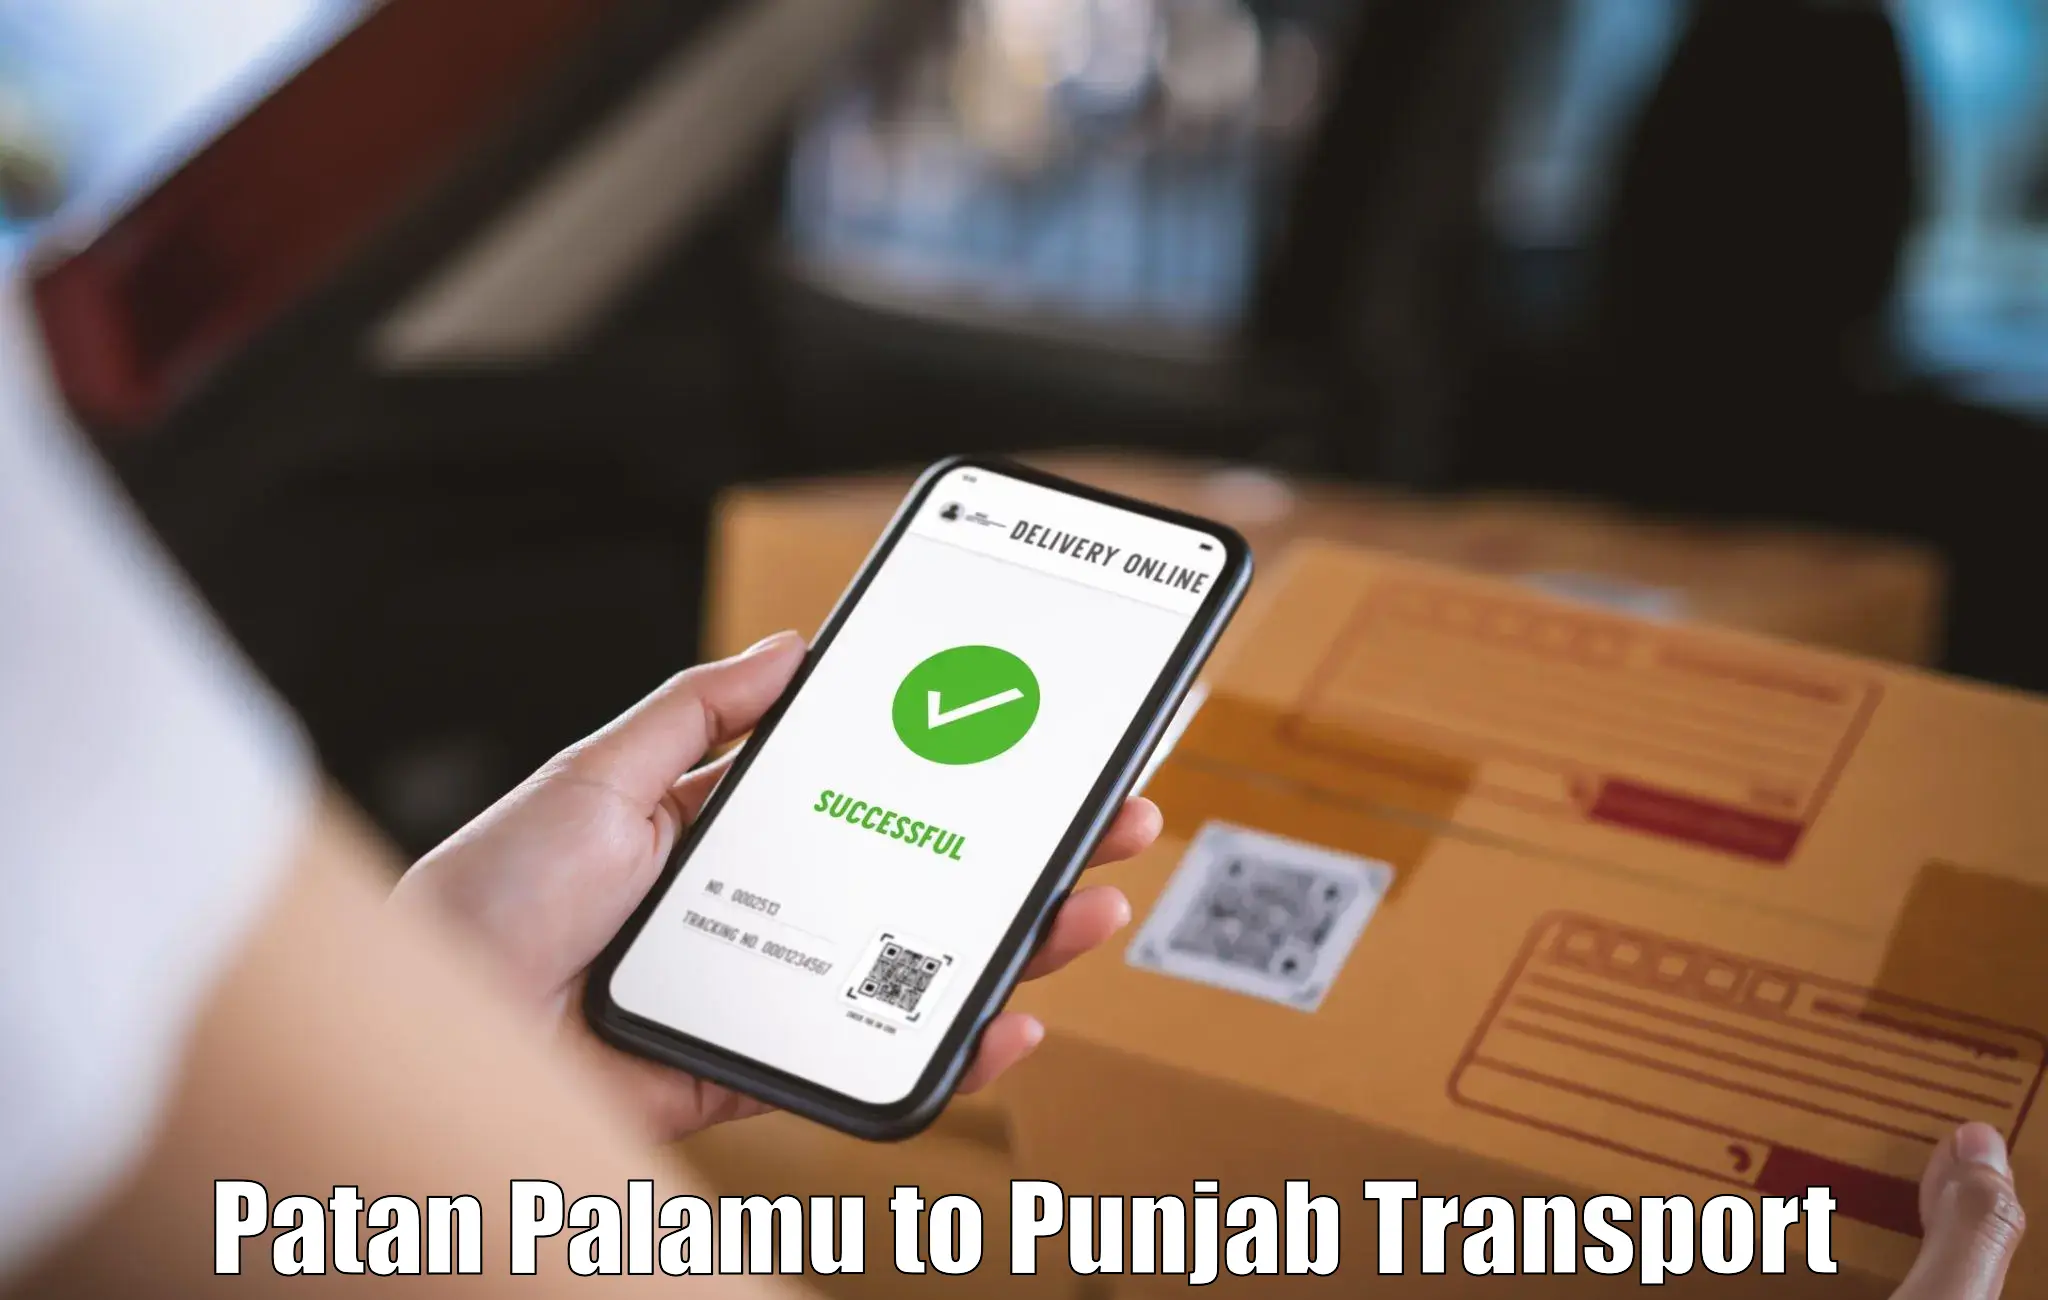 Road transport services Patan Palamu to Pathankot